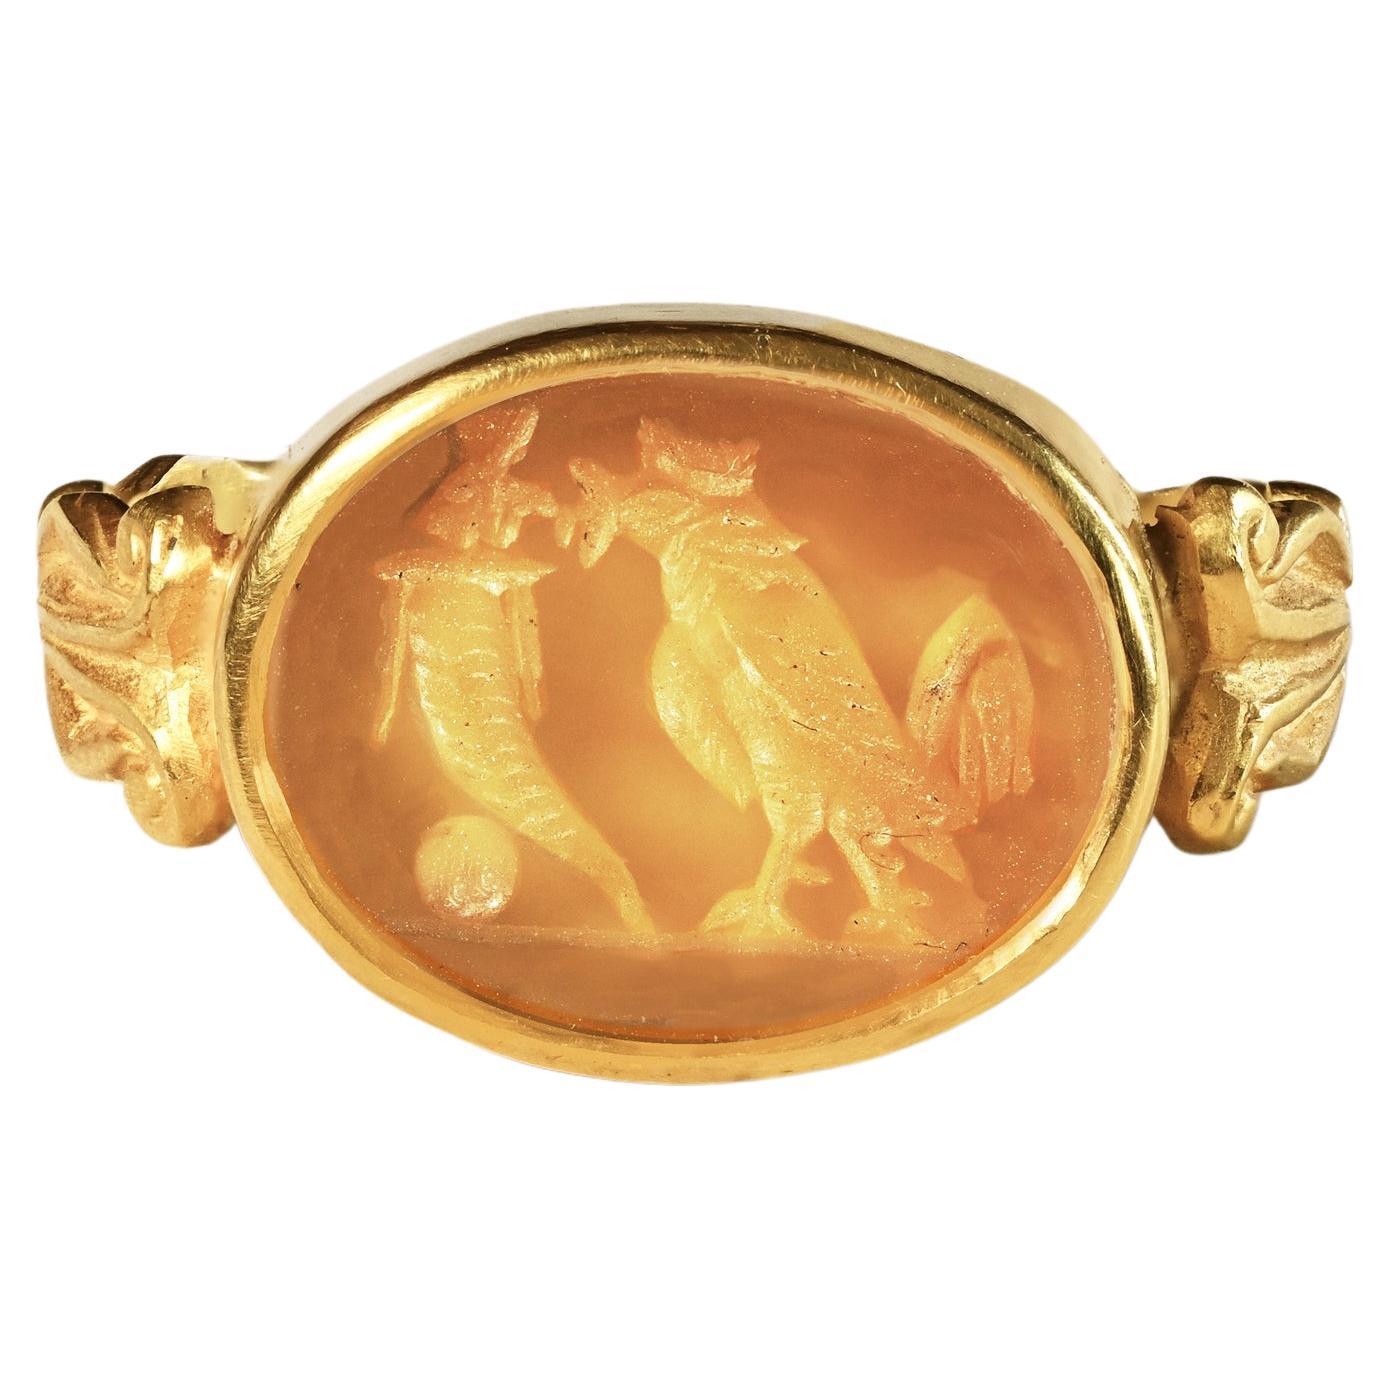 Dieser Ring aus 18-karätigem Gold zeigt ein authentisches römisches Karneol-Intaglio aus dem 1. bis 2. Jahrhundert nach Christus. Der Stichtiefdruck stellt Hahn und Füllhorn dar.
In der griechischen und römischen Antike war der Hahn ein wichtiges